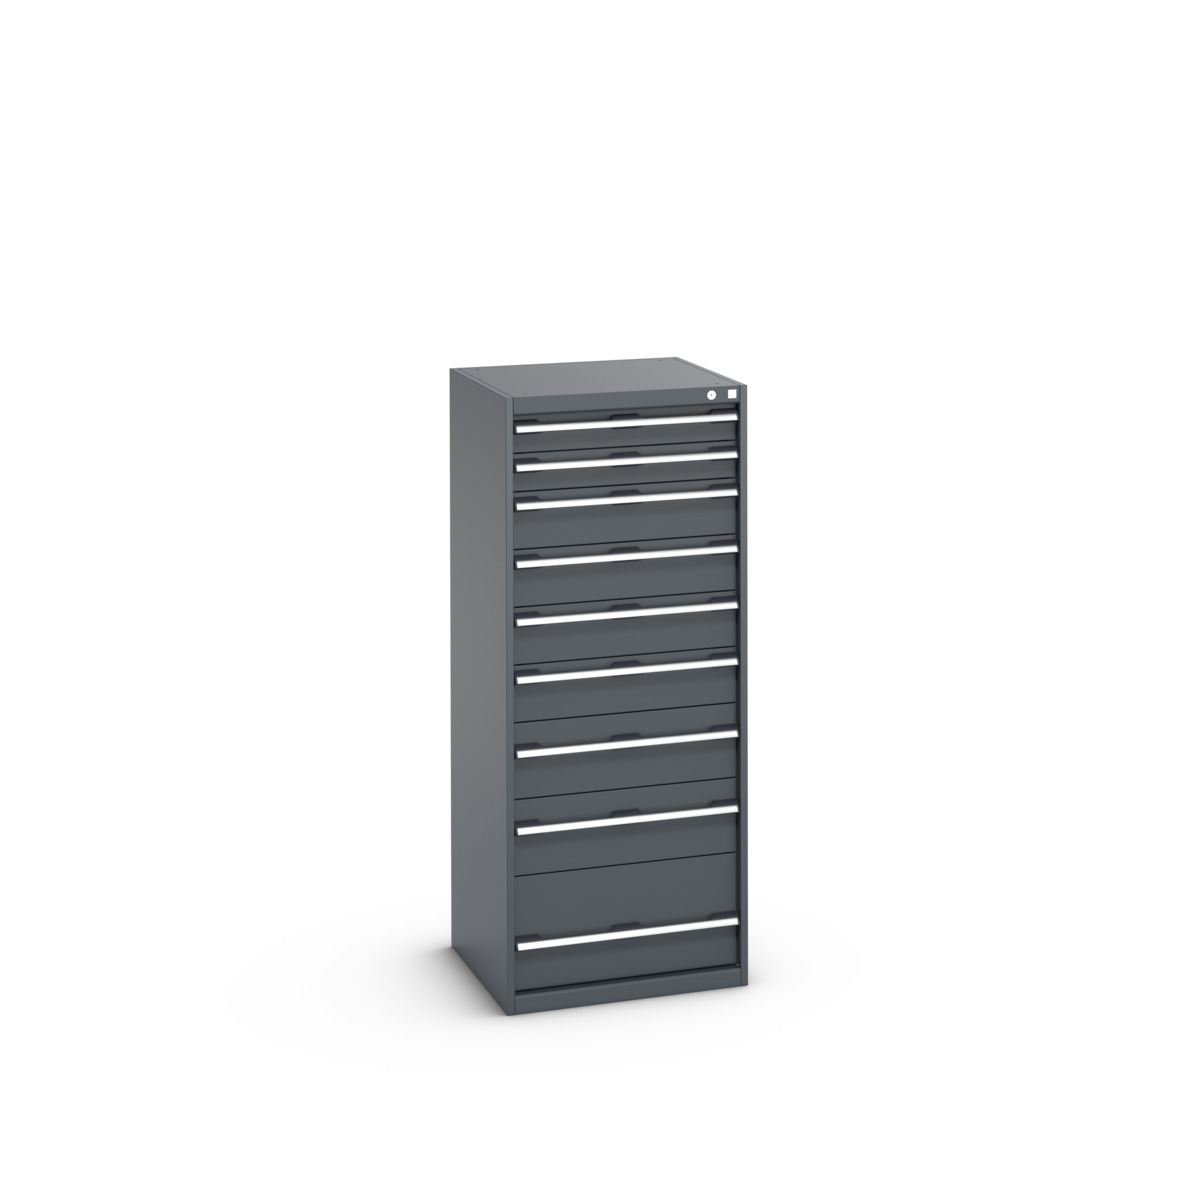 40019154.77V - cubio drawer cabinet